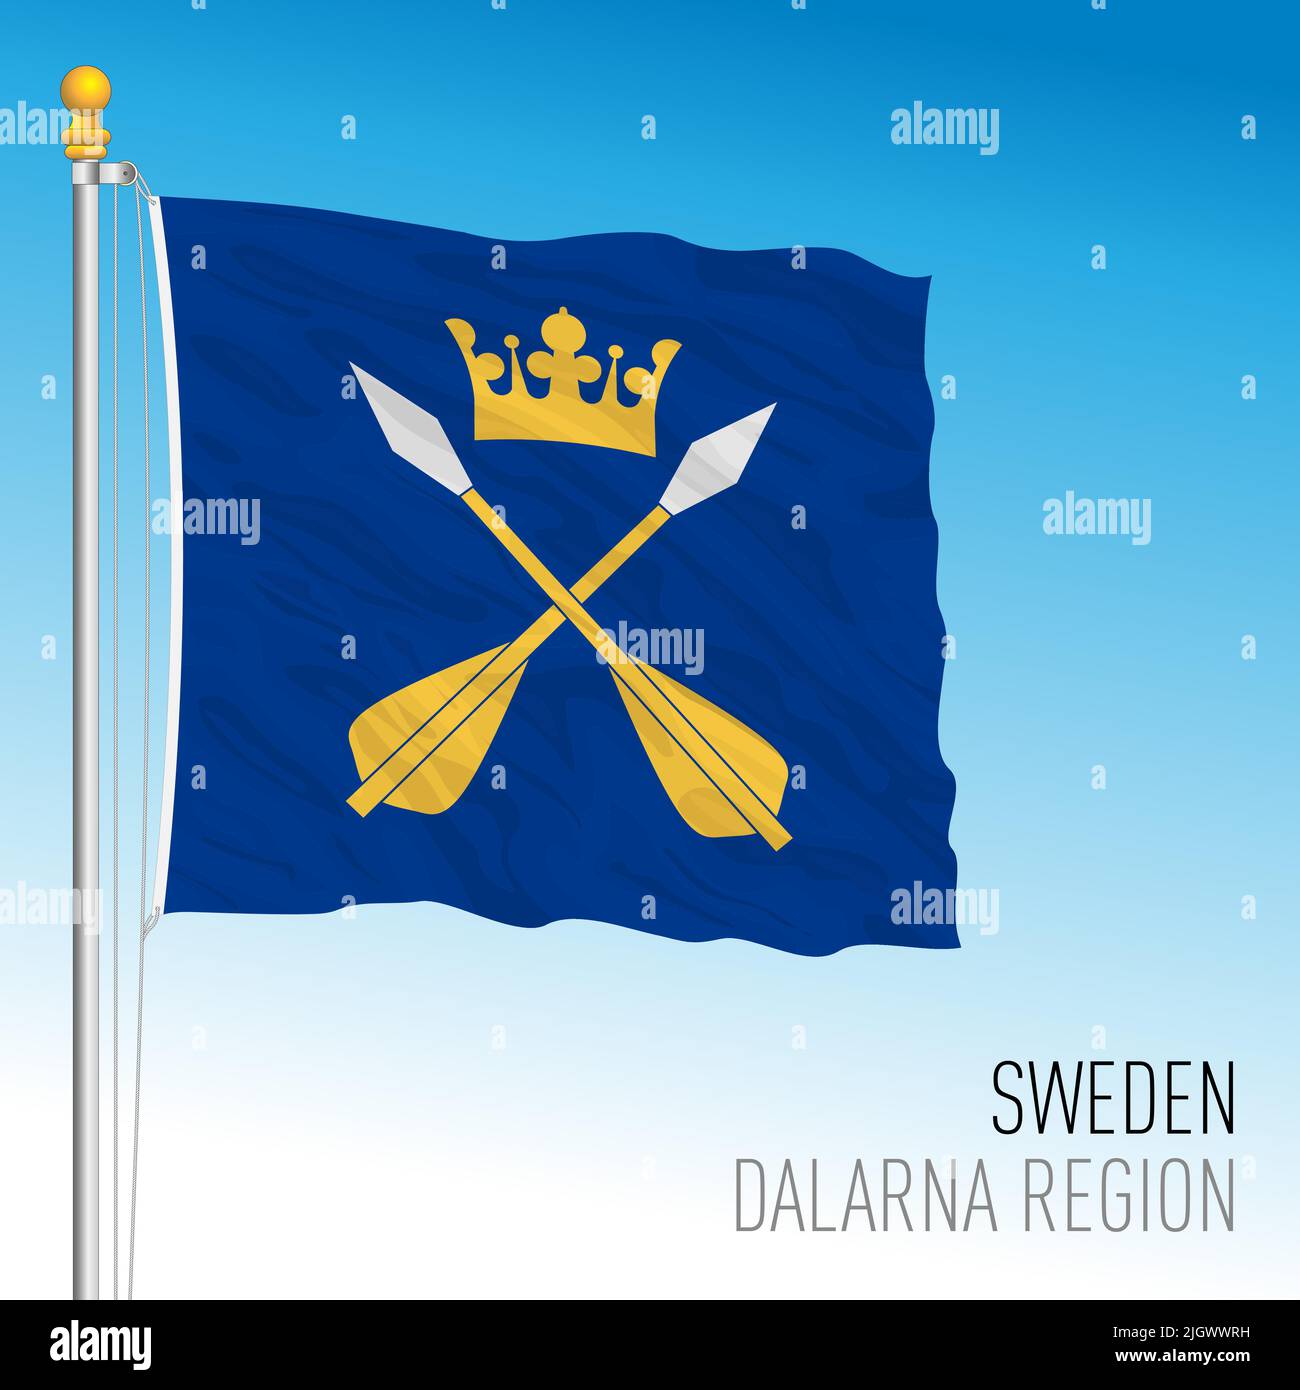 Dalarna regional flag, Kingdom of Sweden, vector illustration Stock Vector